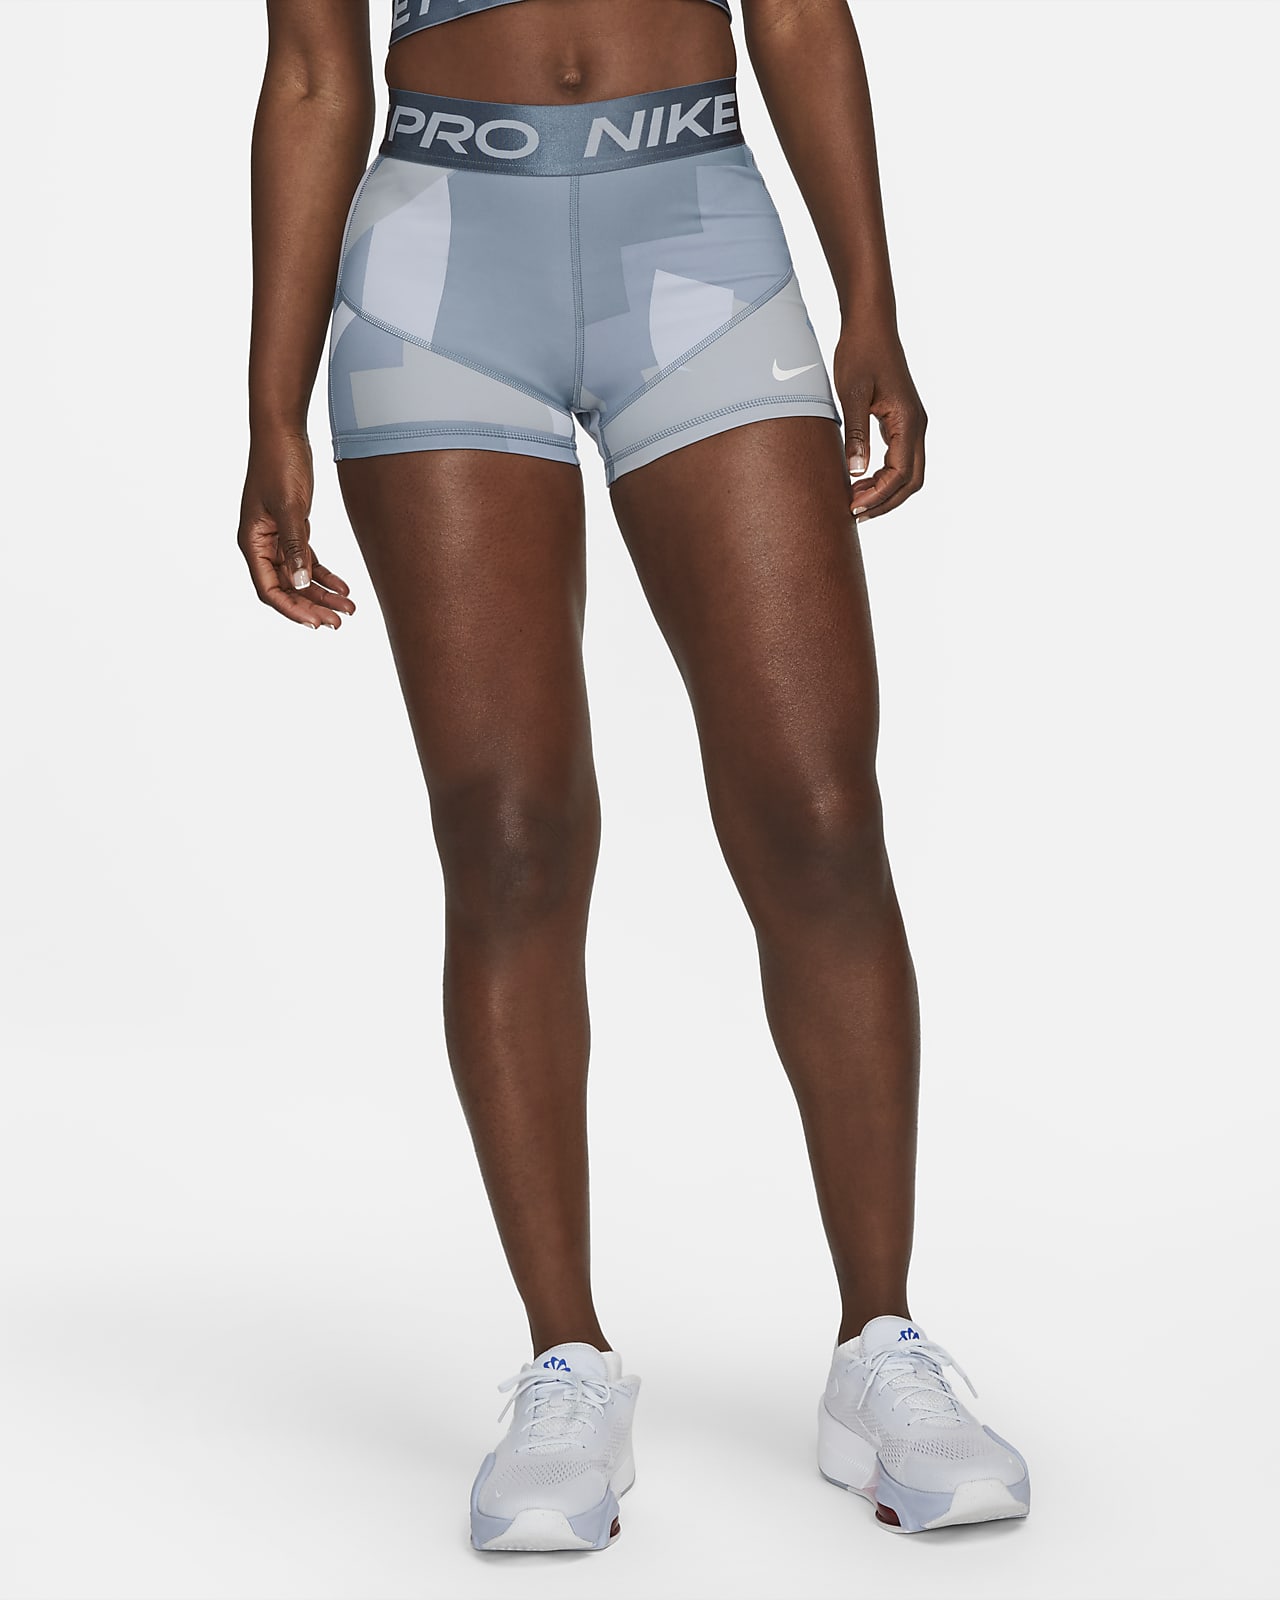 Nike Pro Shorts Sizing | lupon.gov.ph